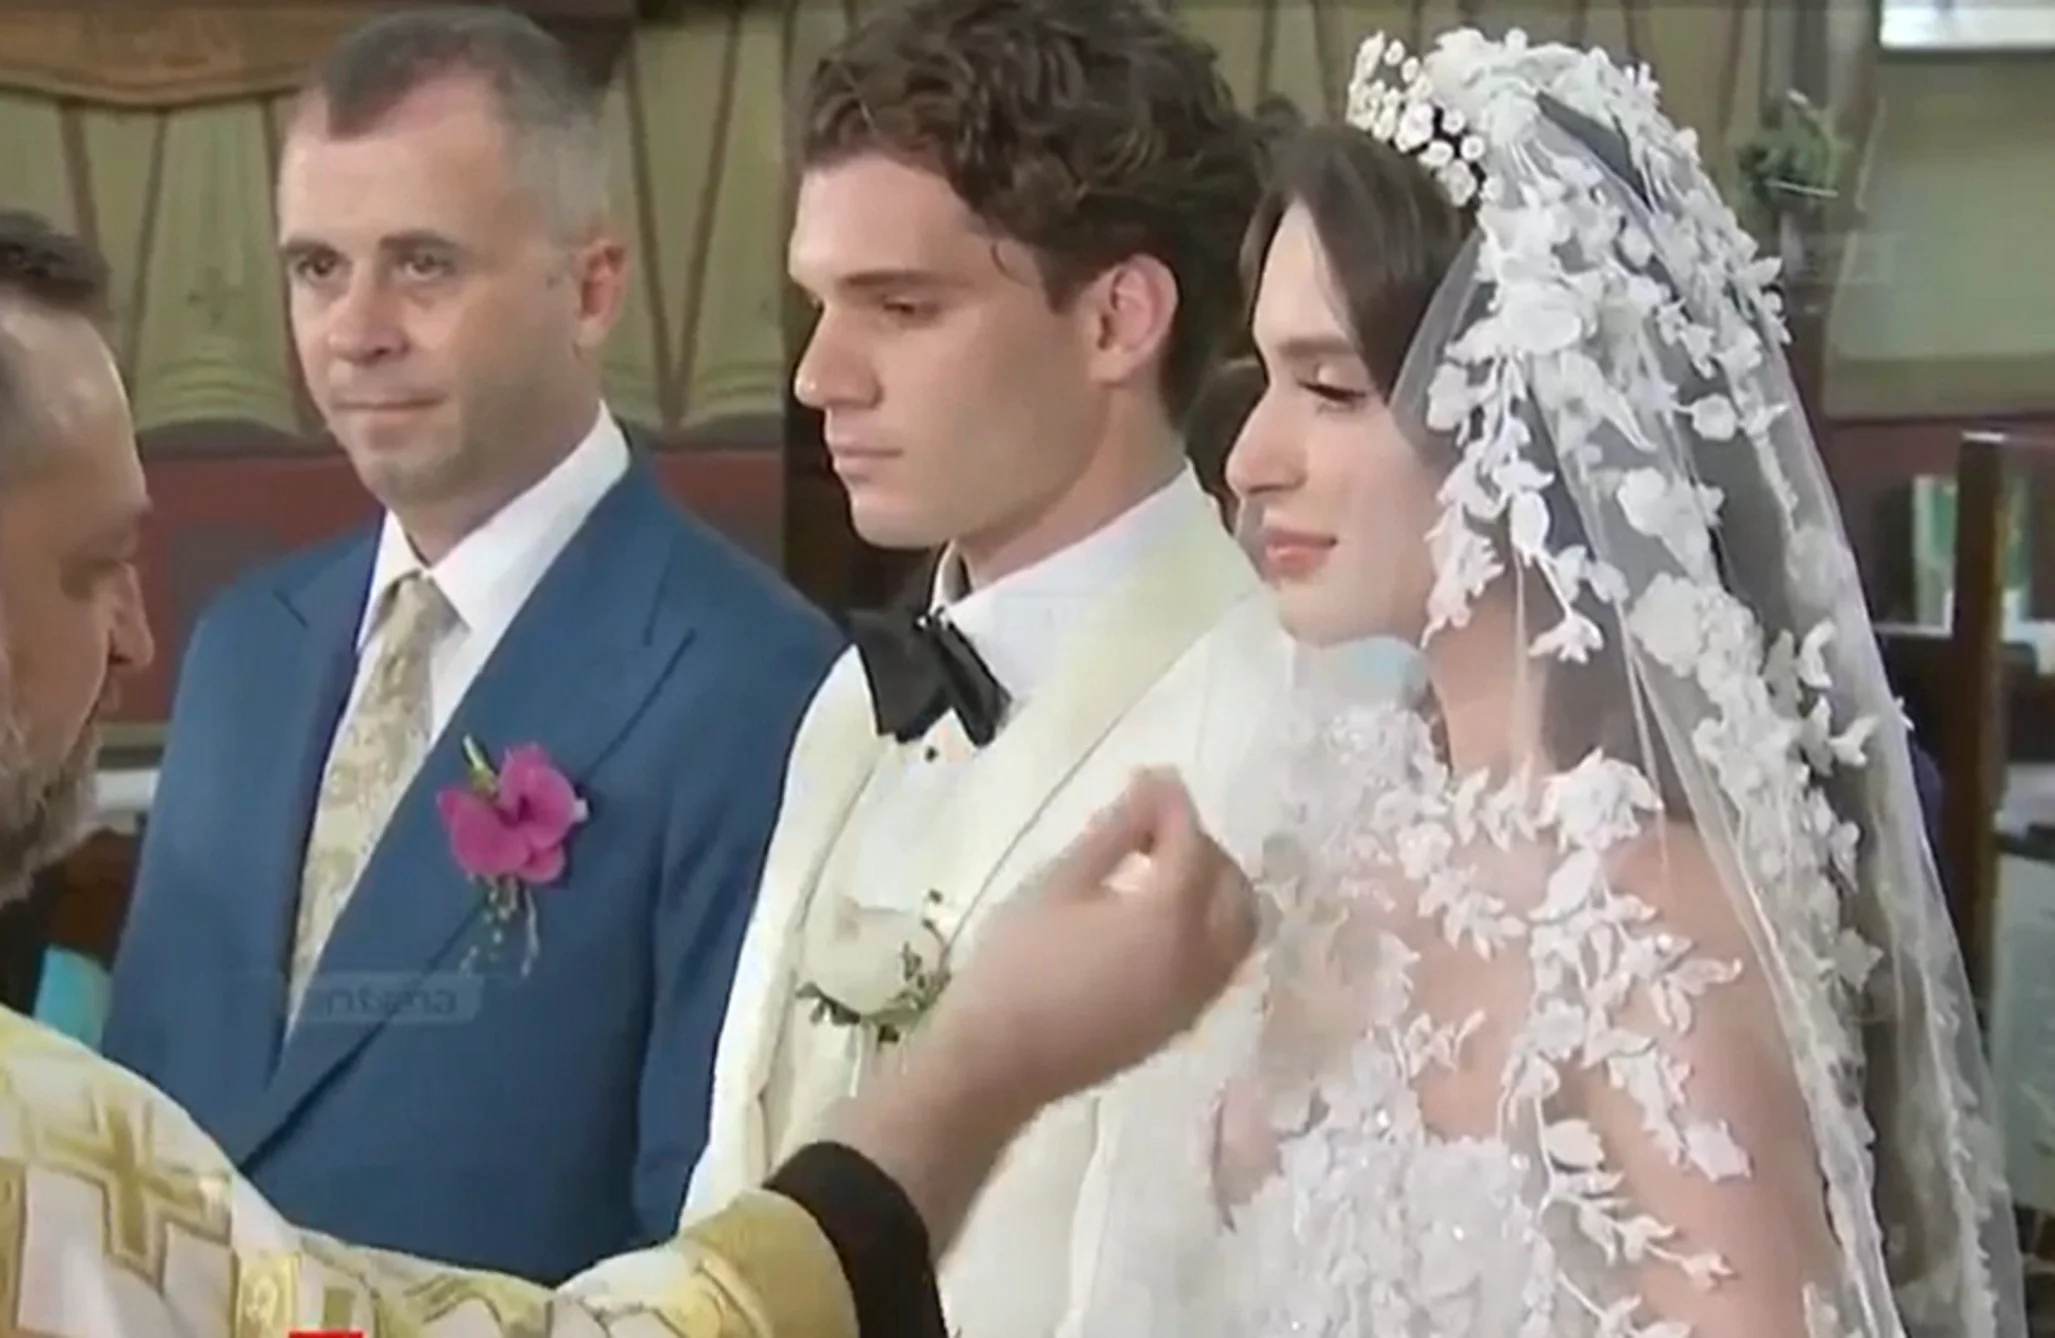 Marele absent de la nunta lui Ianis Hagi, în lacrimi: M-am uitat la televizor. Nu ne mai bagă în seamă